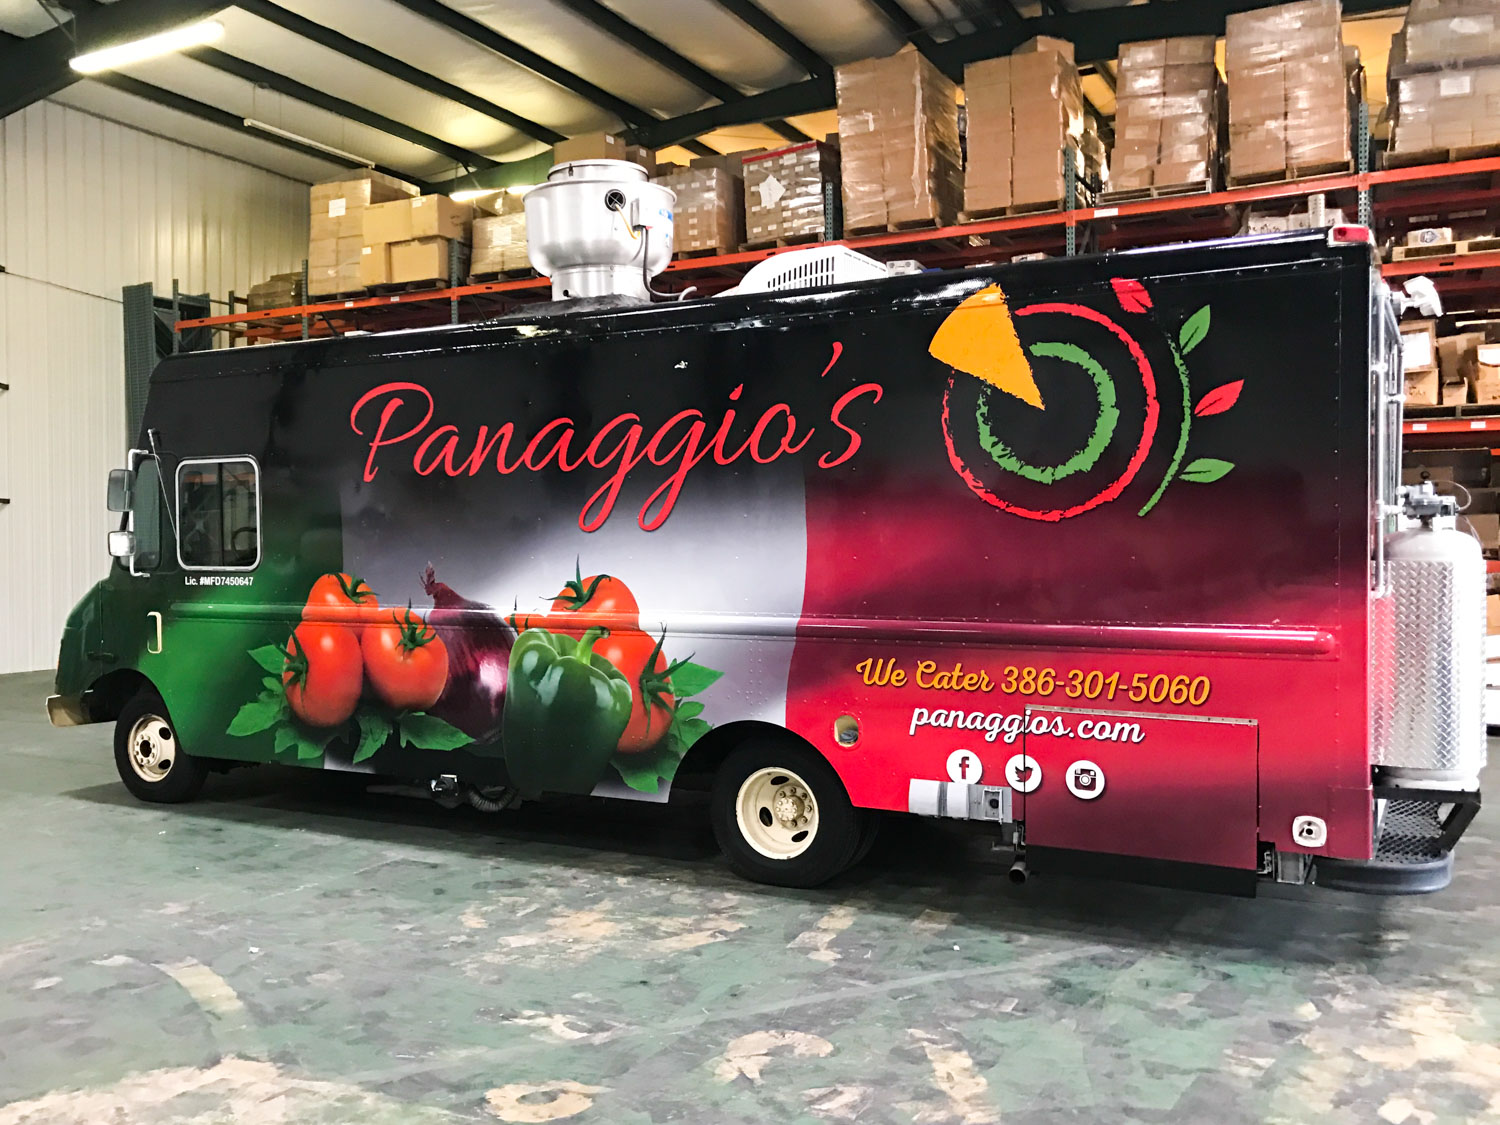 Panaggio's Truck